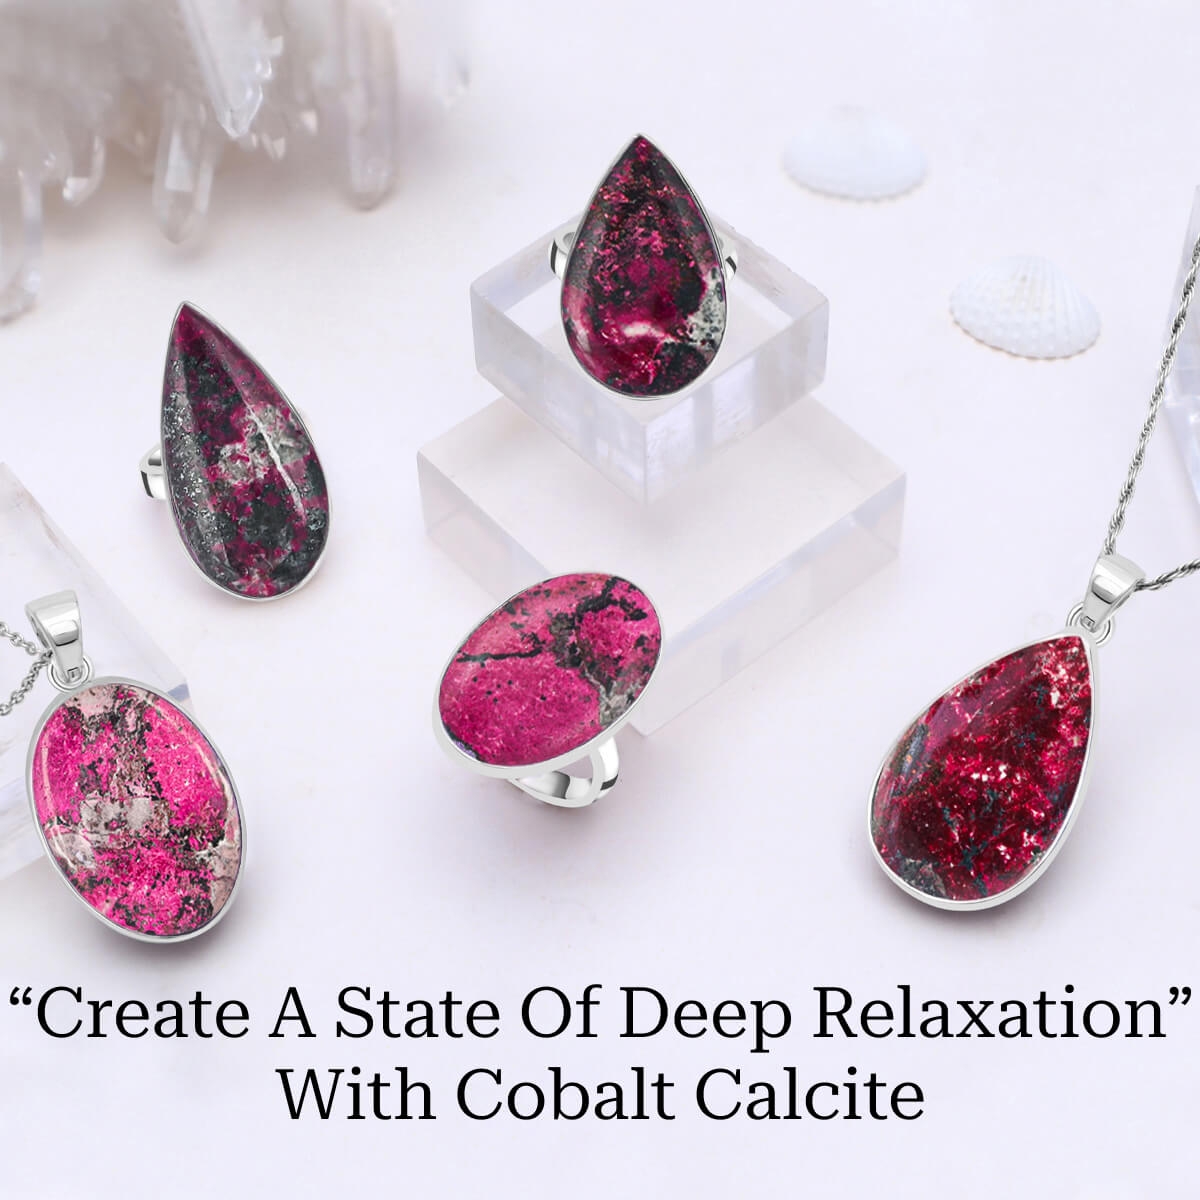 Cobalt Calcite Healing Properties and Benefits